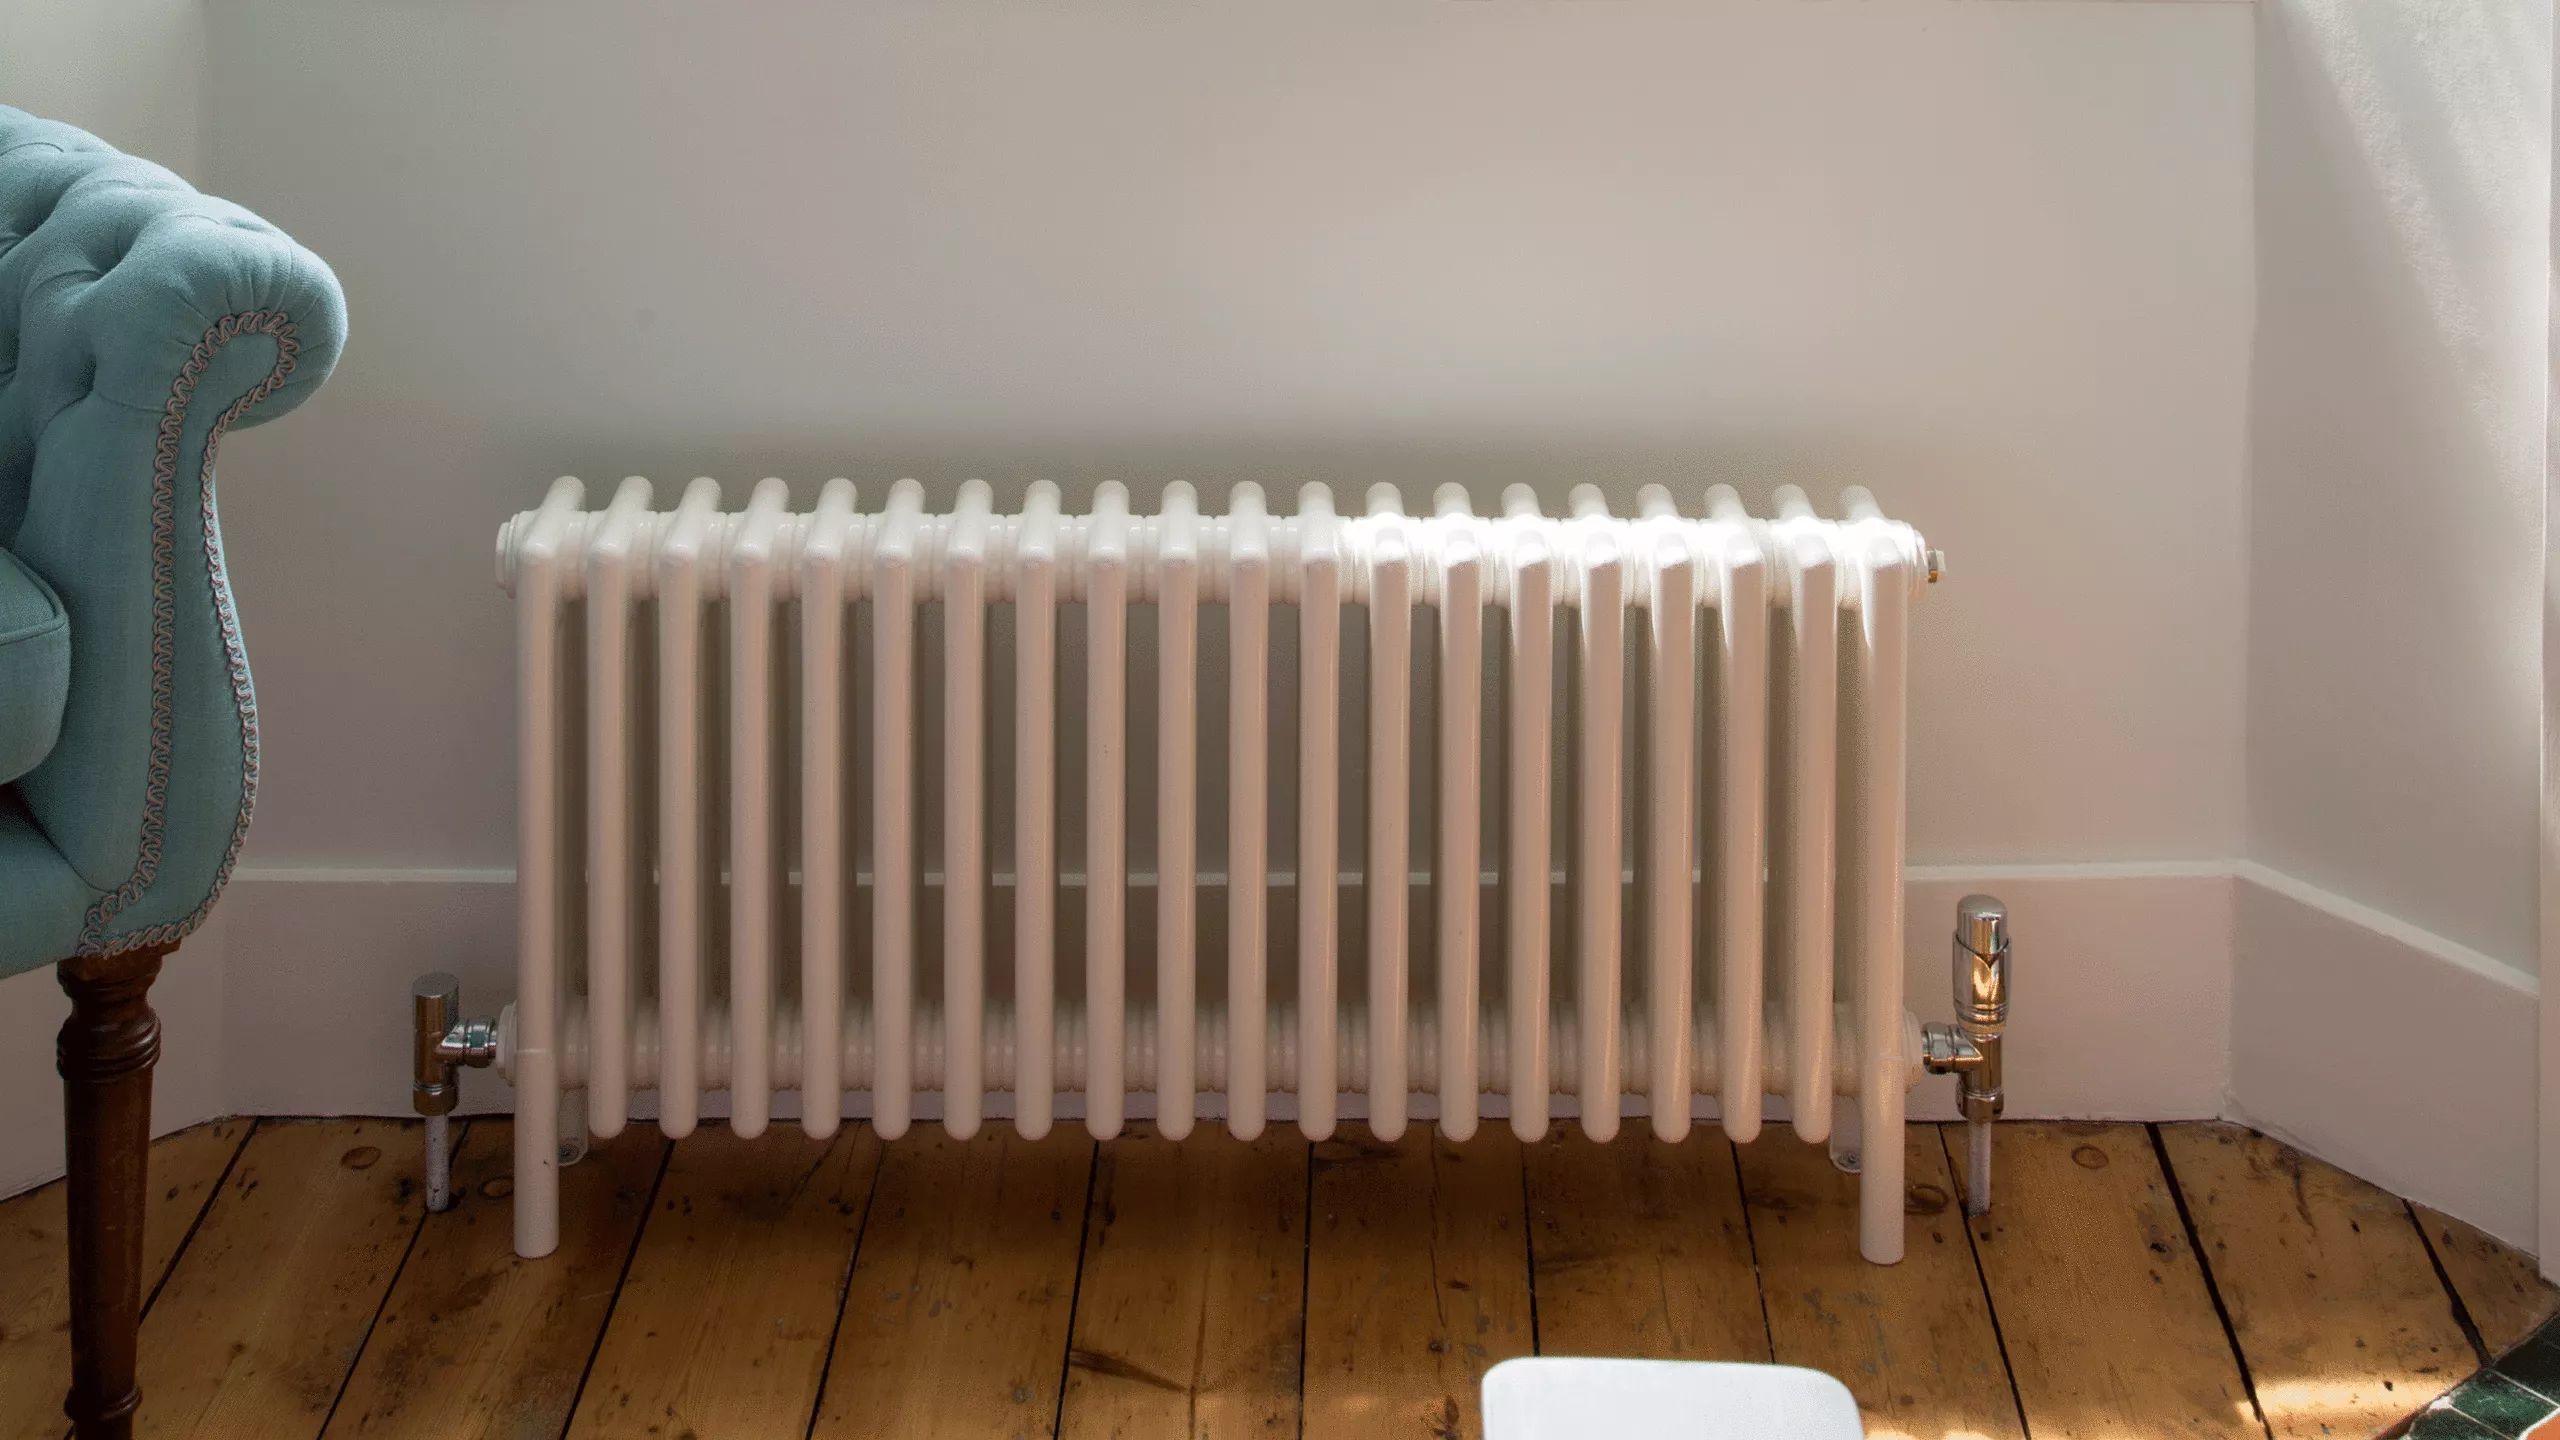 Comment purger un radiateur – comment assurer le bon fonctionnement de votre chauffage?